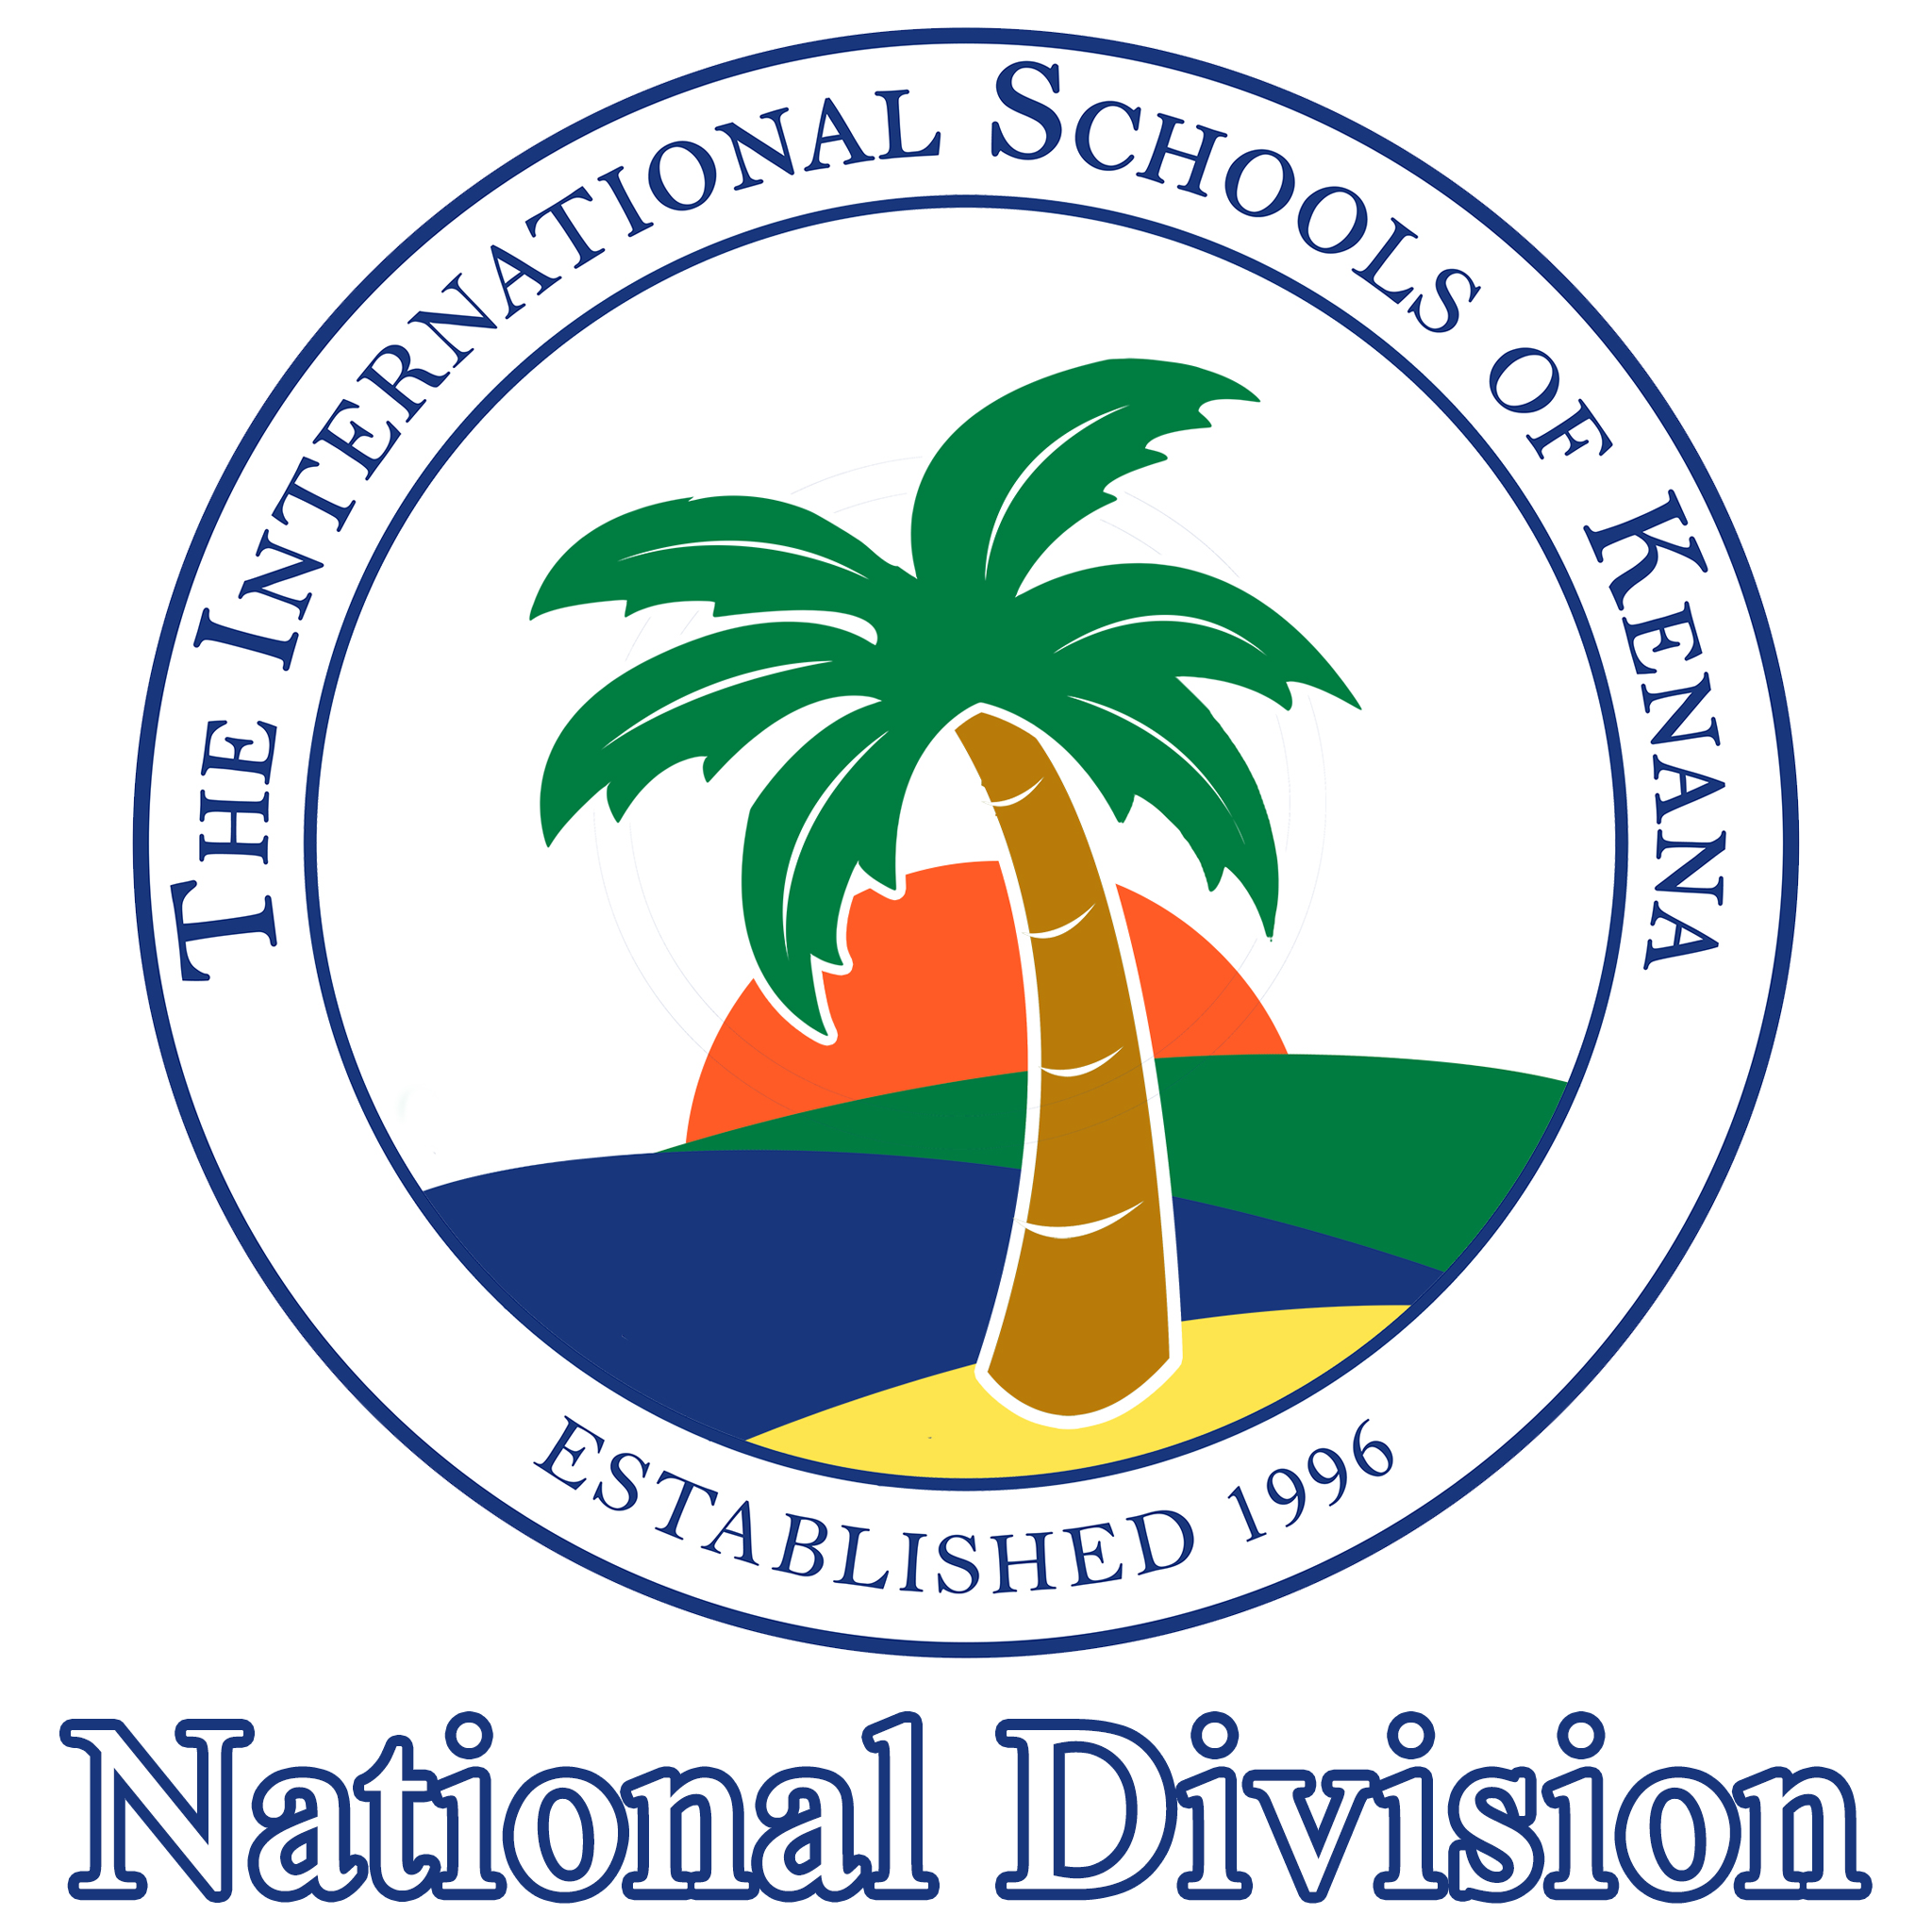 ISK - National Division